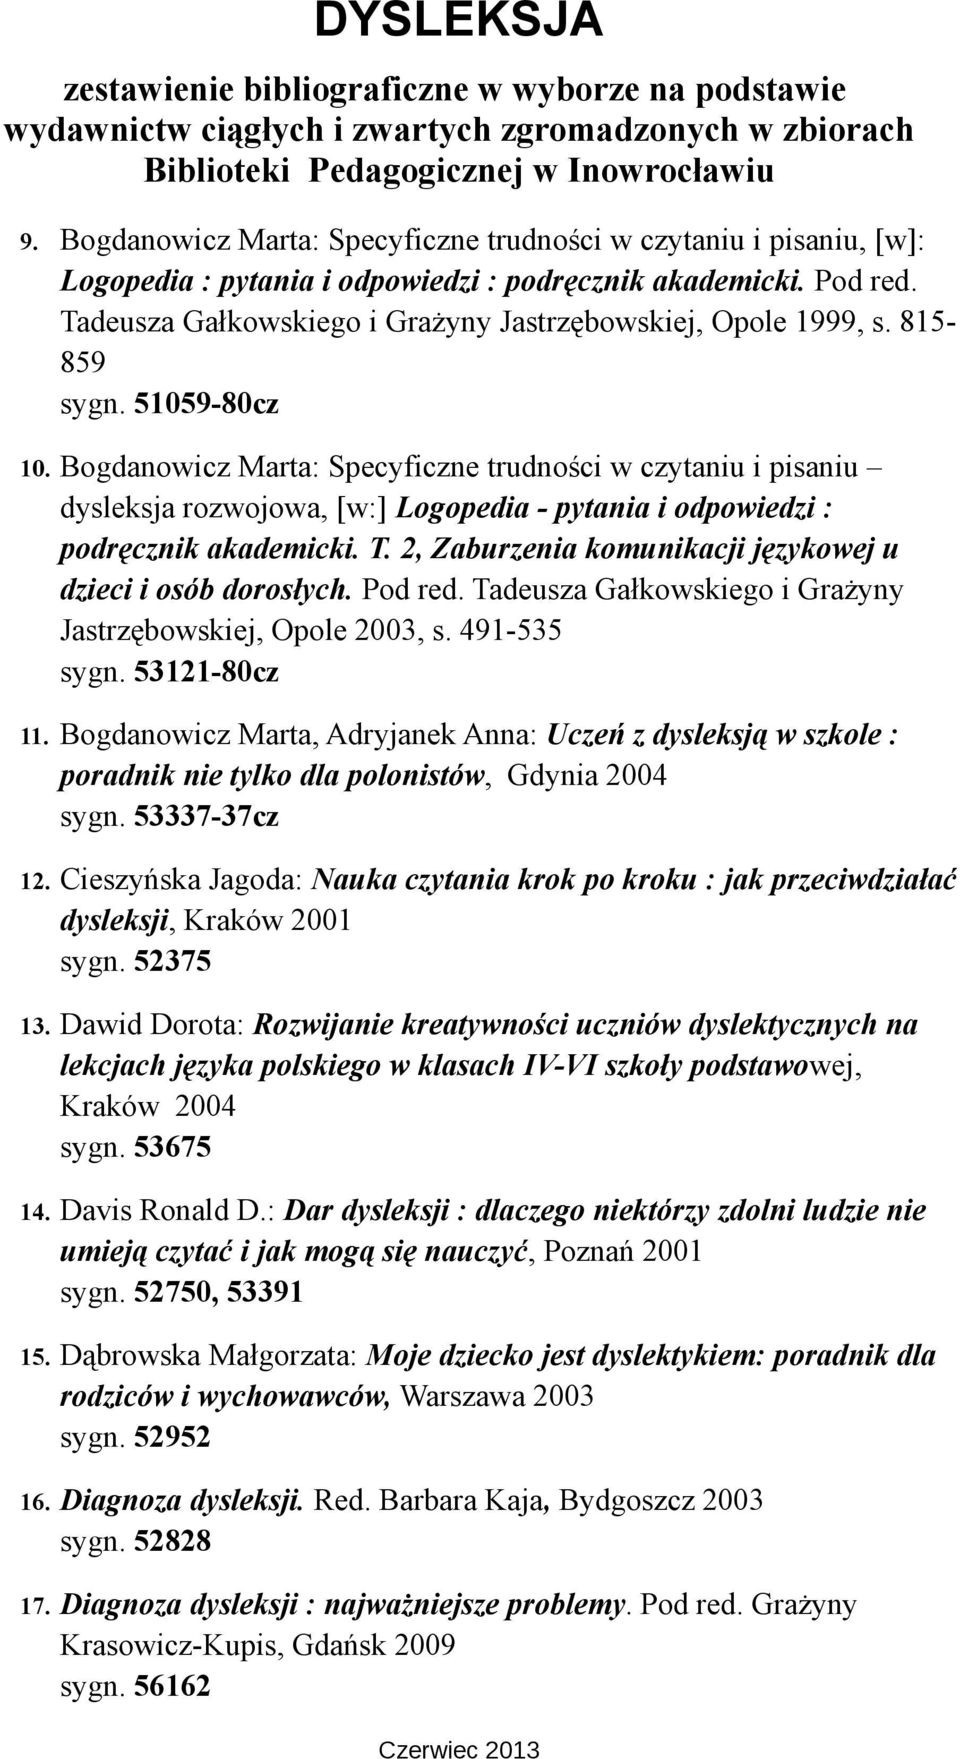 Bogdanowicz Marta: Specyficzne trudności w czytaniu i pisaniu dysleksja rozwojowa, [w:] Logopedia - pytania i odpowiedzi : podręcznik akademicki. T.